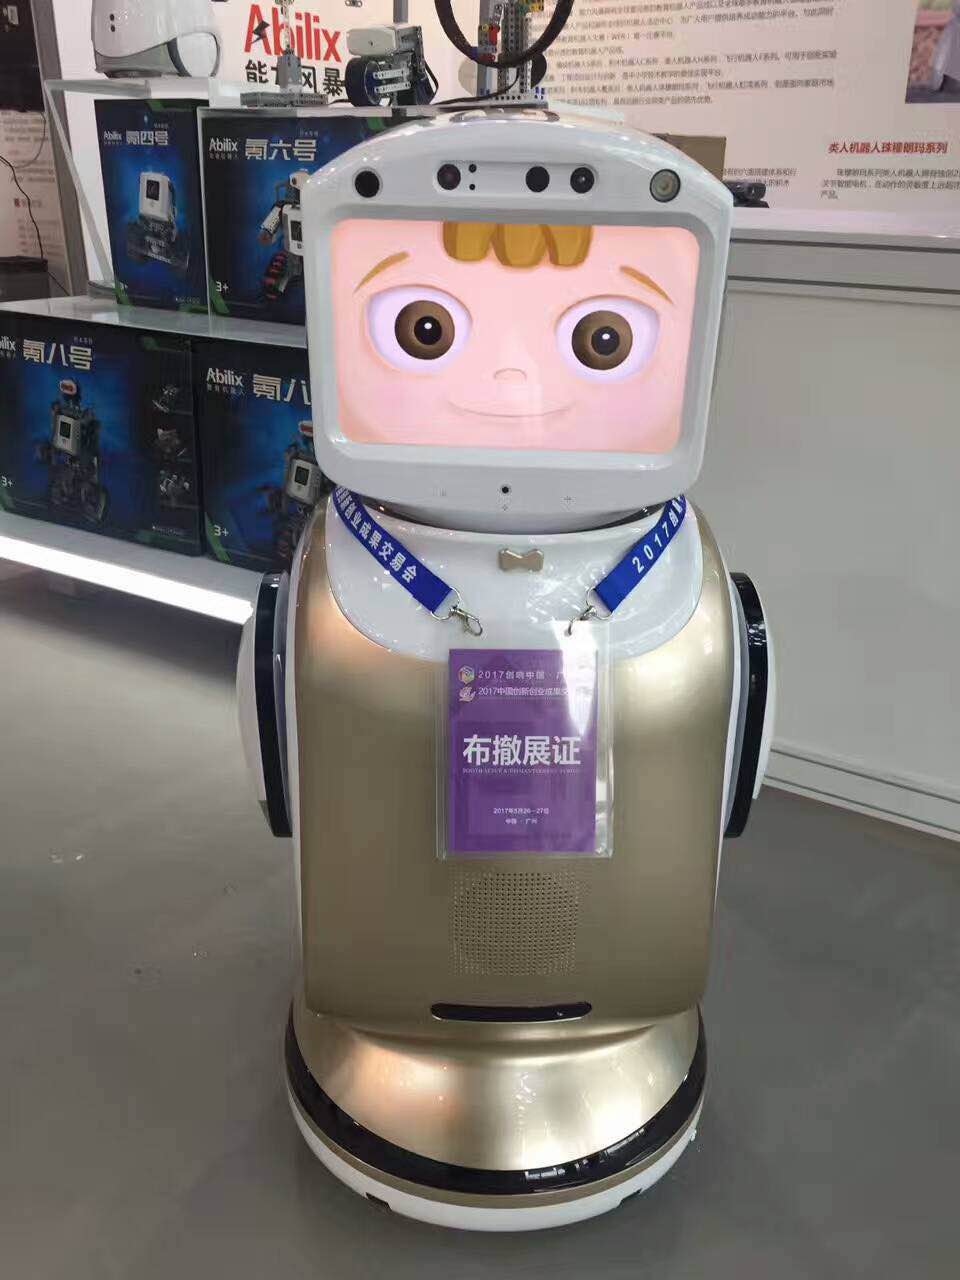 送餐机器人厂家说人工智能将改变我们的未来生活